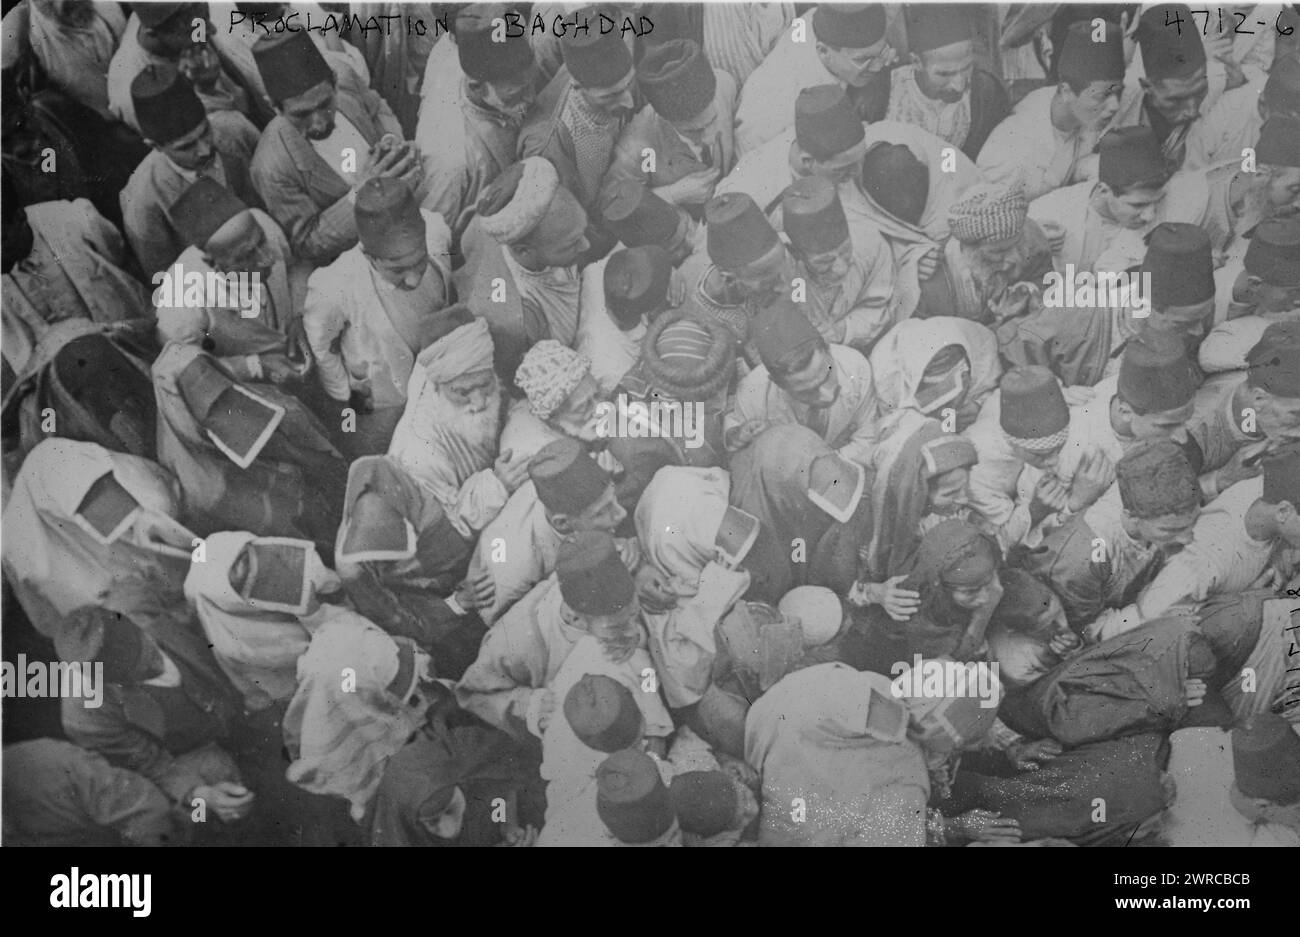 Proclamation, Bagdad, photographie montre une foule d'hommes et de femmes à Bagdad, Irak, après la conquête de la ville par l'armée britannique en mars 1917 pendant la première Guerre mondiale, 1917, Guerre mondiale, 1914-1918, négatifs en verre, 1 négatif : verre Banque D'Images